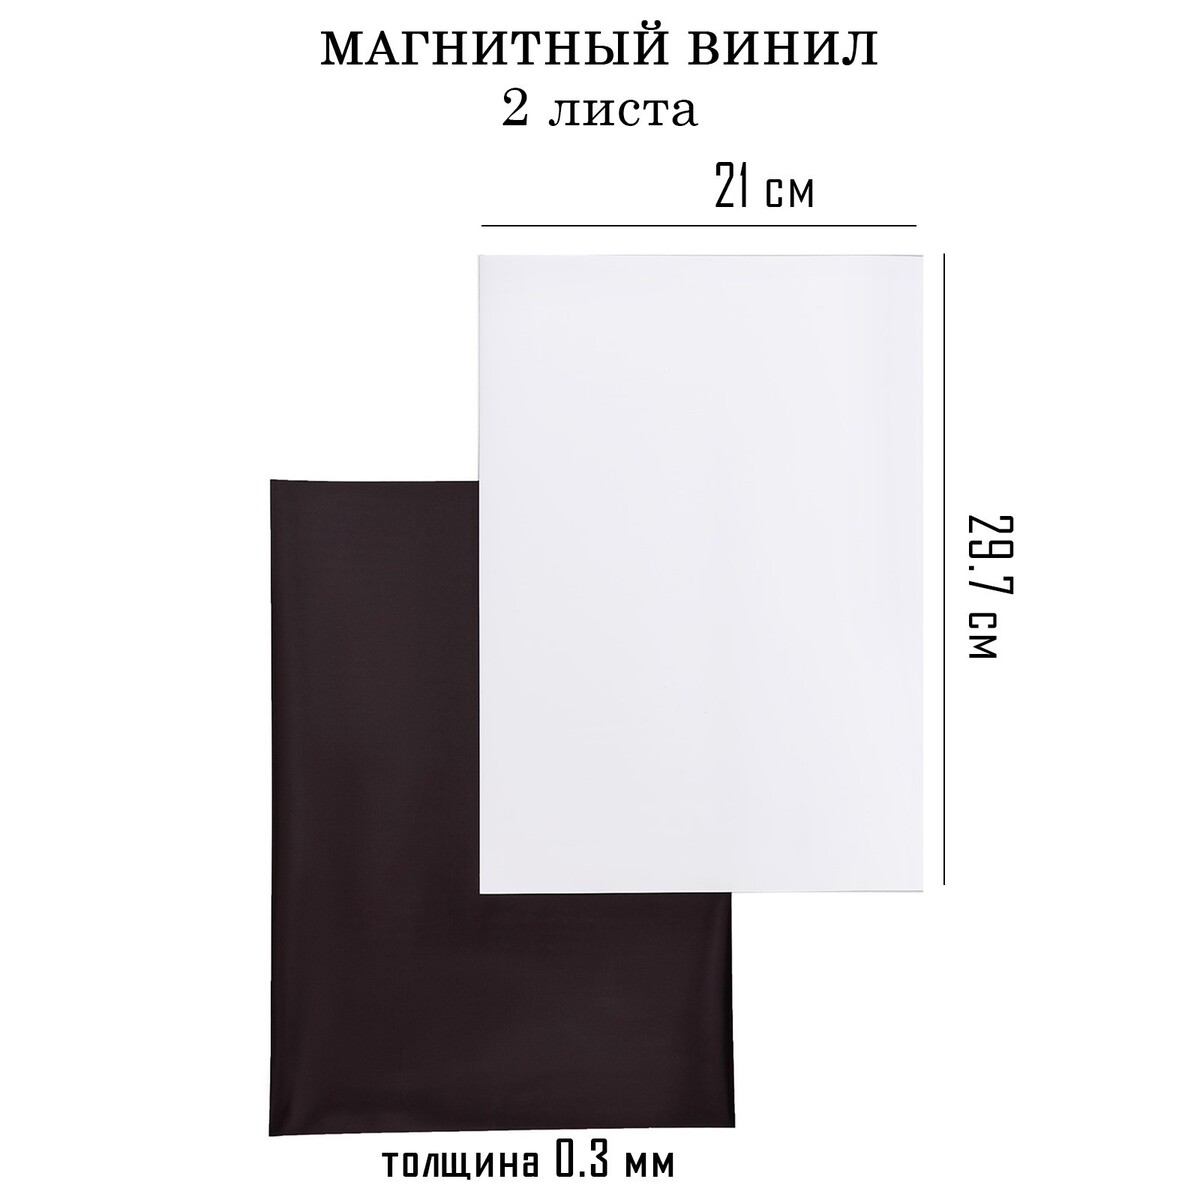 Магнитный винил, с пвх поверхностью, а4, 2 шт, толщина 0.3 мм, 21 х 29.7 см, белый